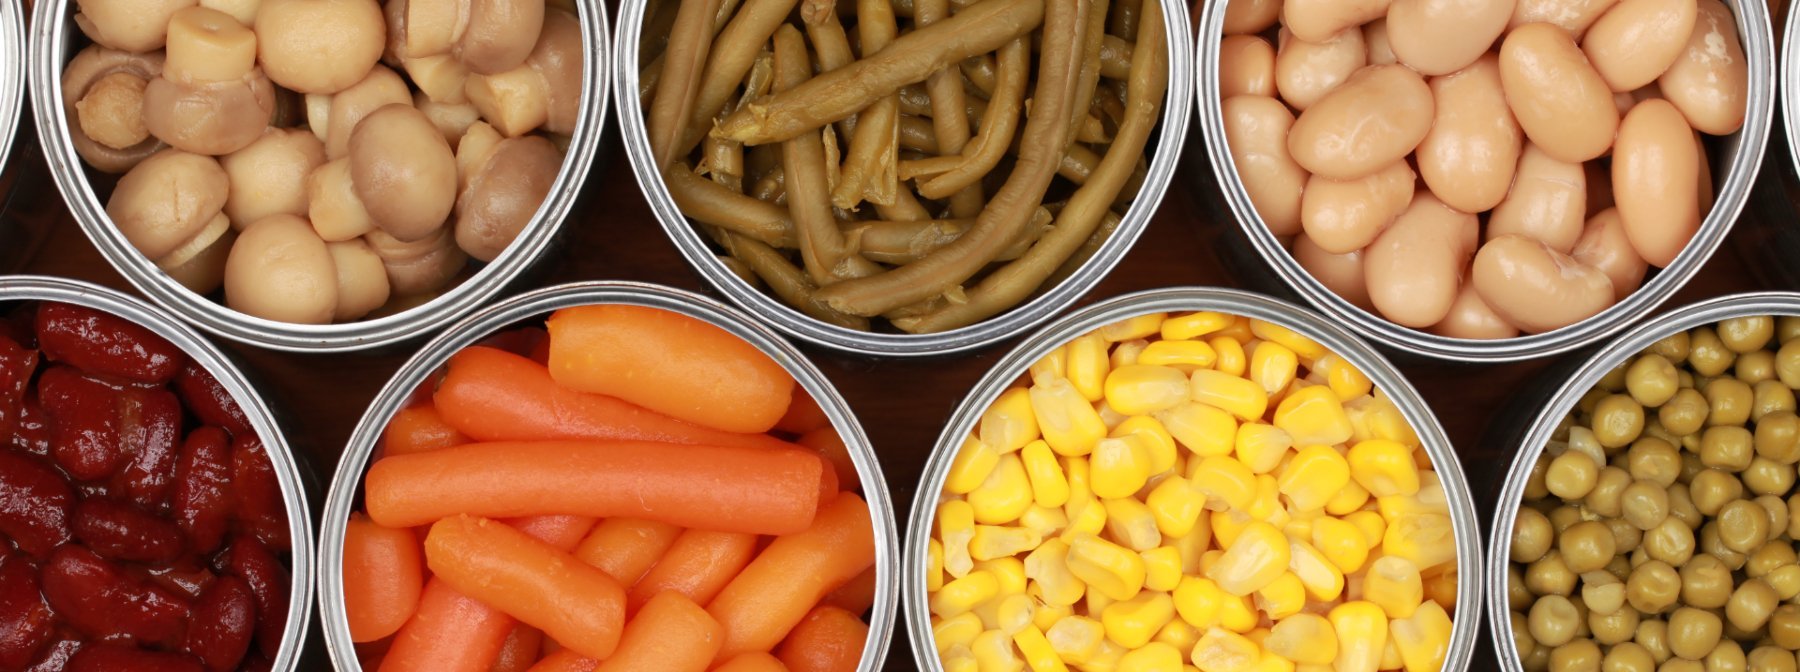 10 консервирани храни богати на хранителни вещества, с които да се запасите